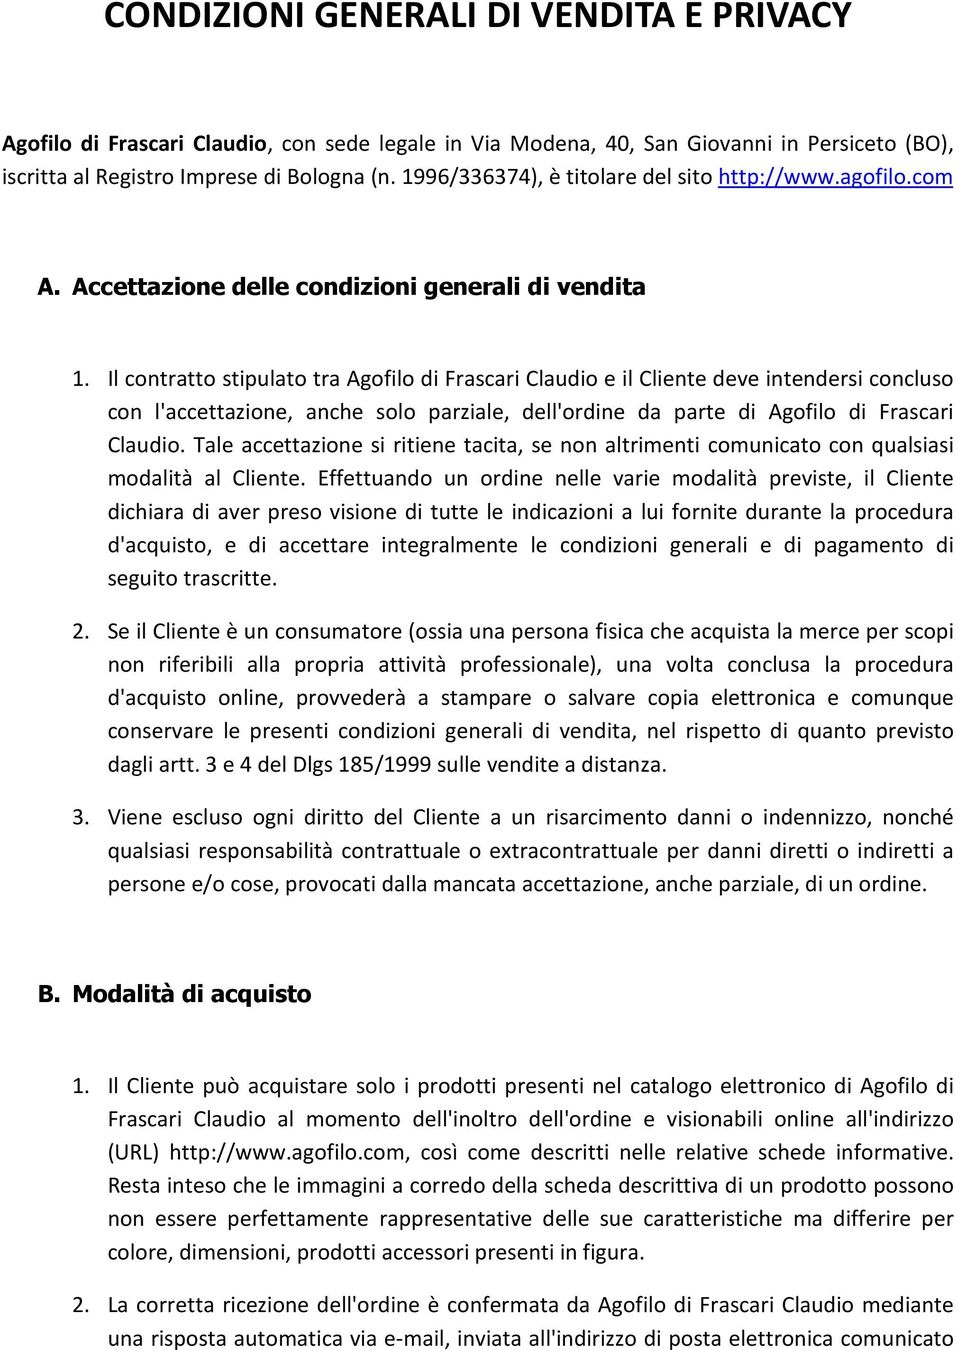 Il contratto stipulato tra Agofilo di Frascari Claudio e il Cliente deve intendersi concluso con l'accettazione, anche solo parziale, dell'ordine da parte di Agofilo di Frascari Claudio.